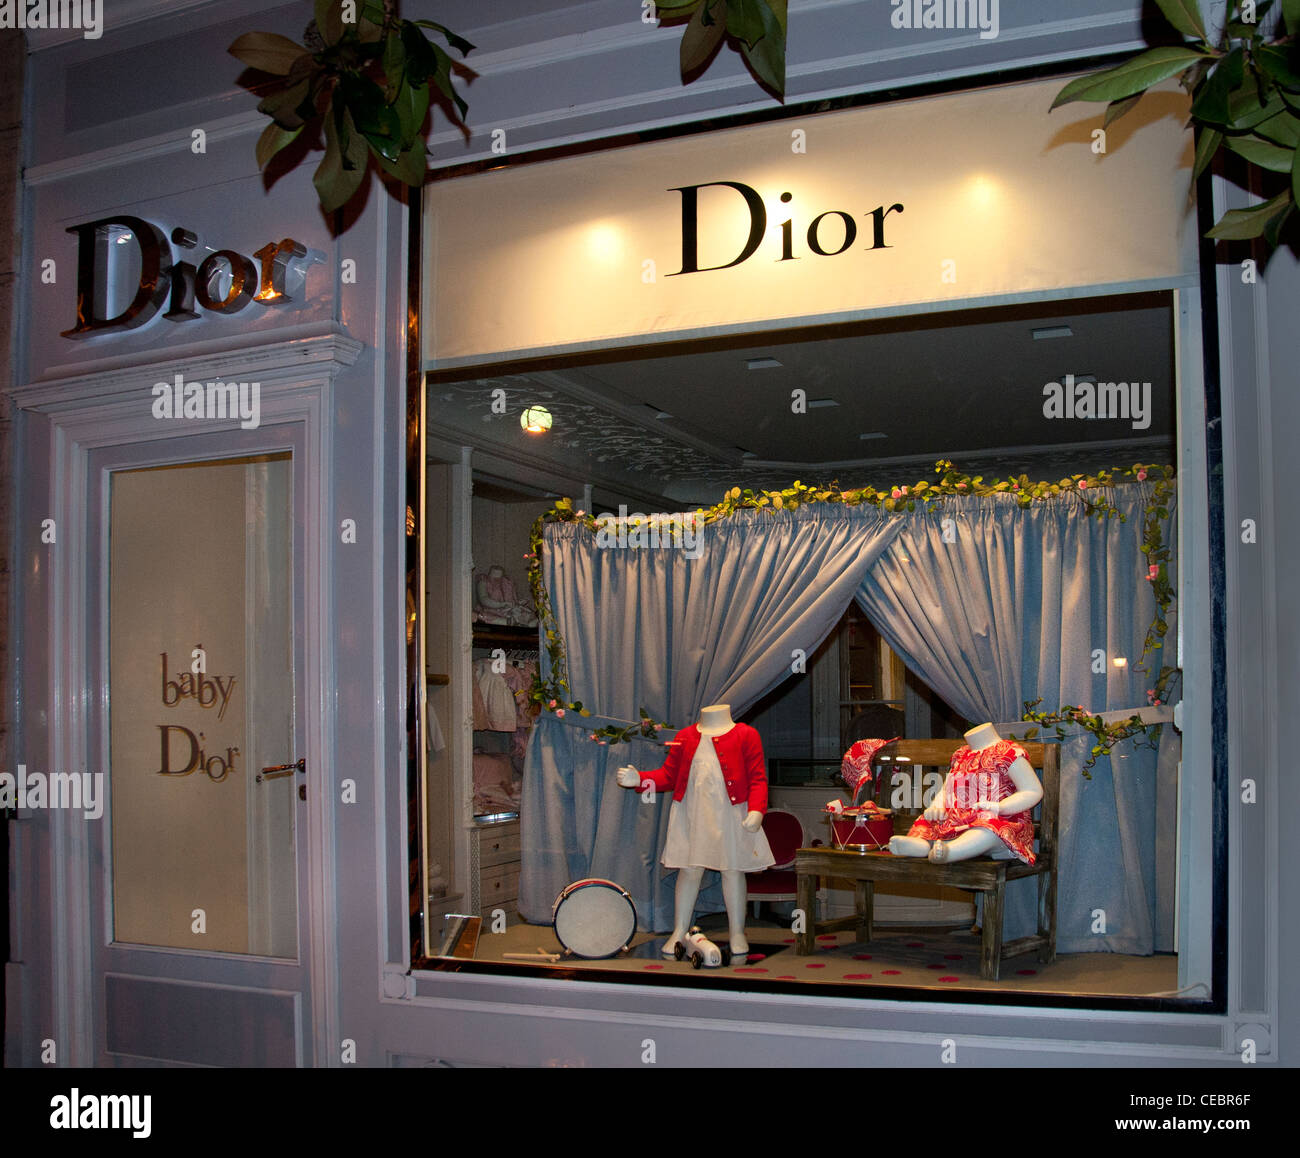 Baby Dior haute couture Avenue 